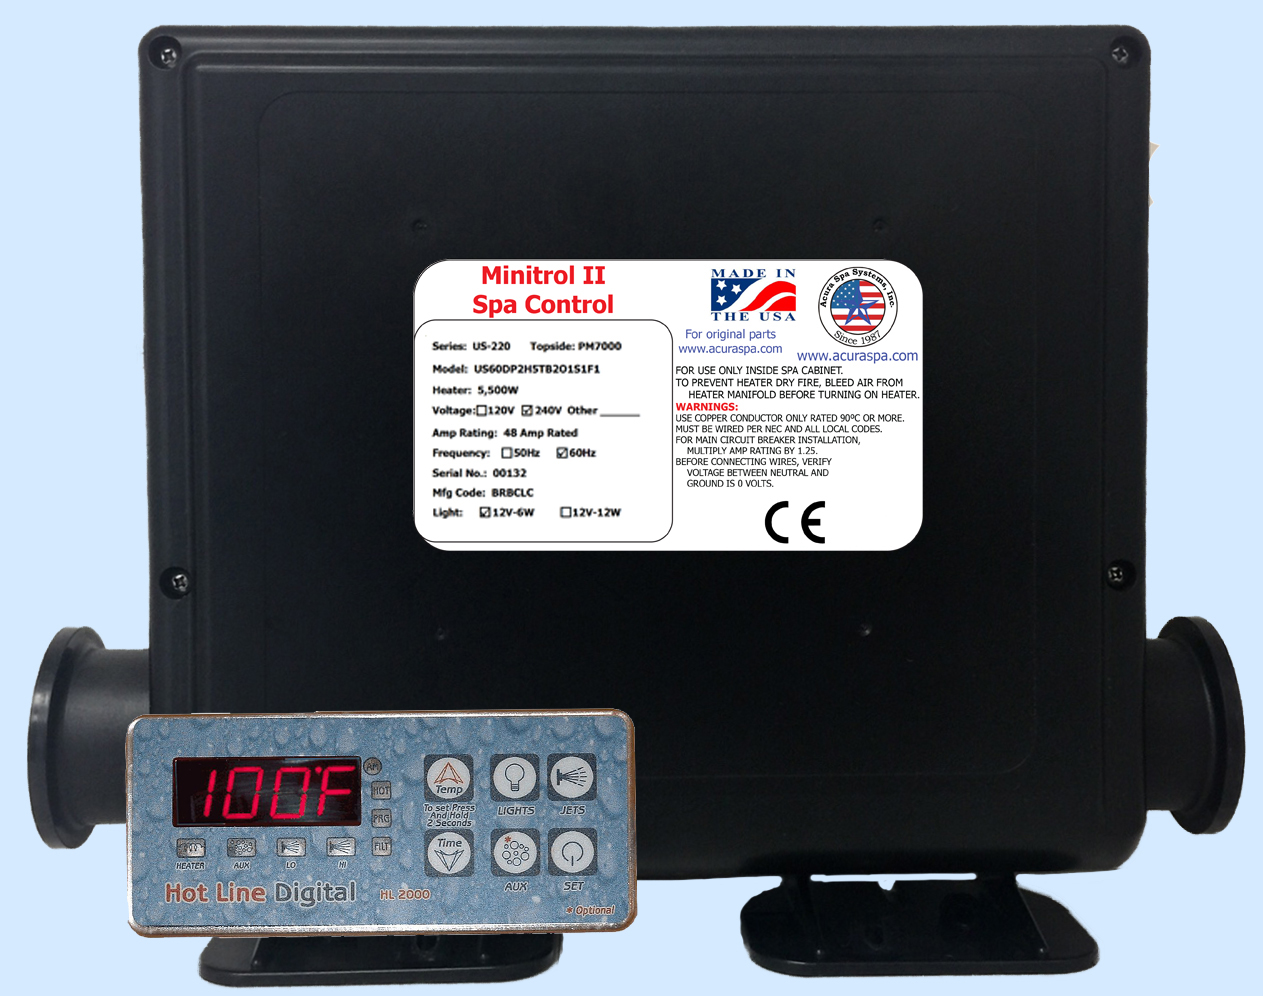 Minitrol II Digital Spa Controller